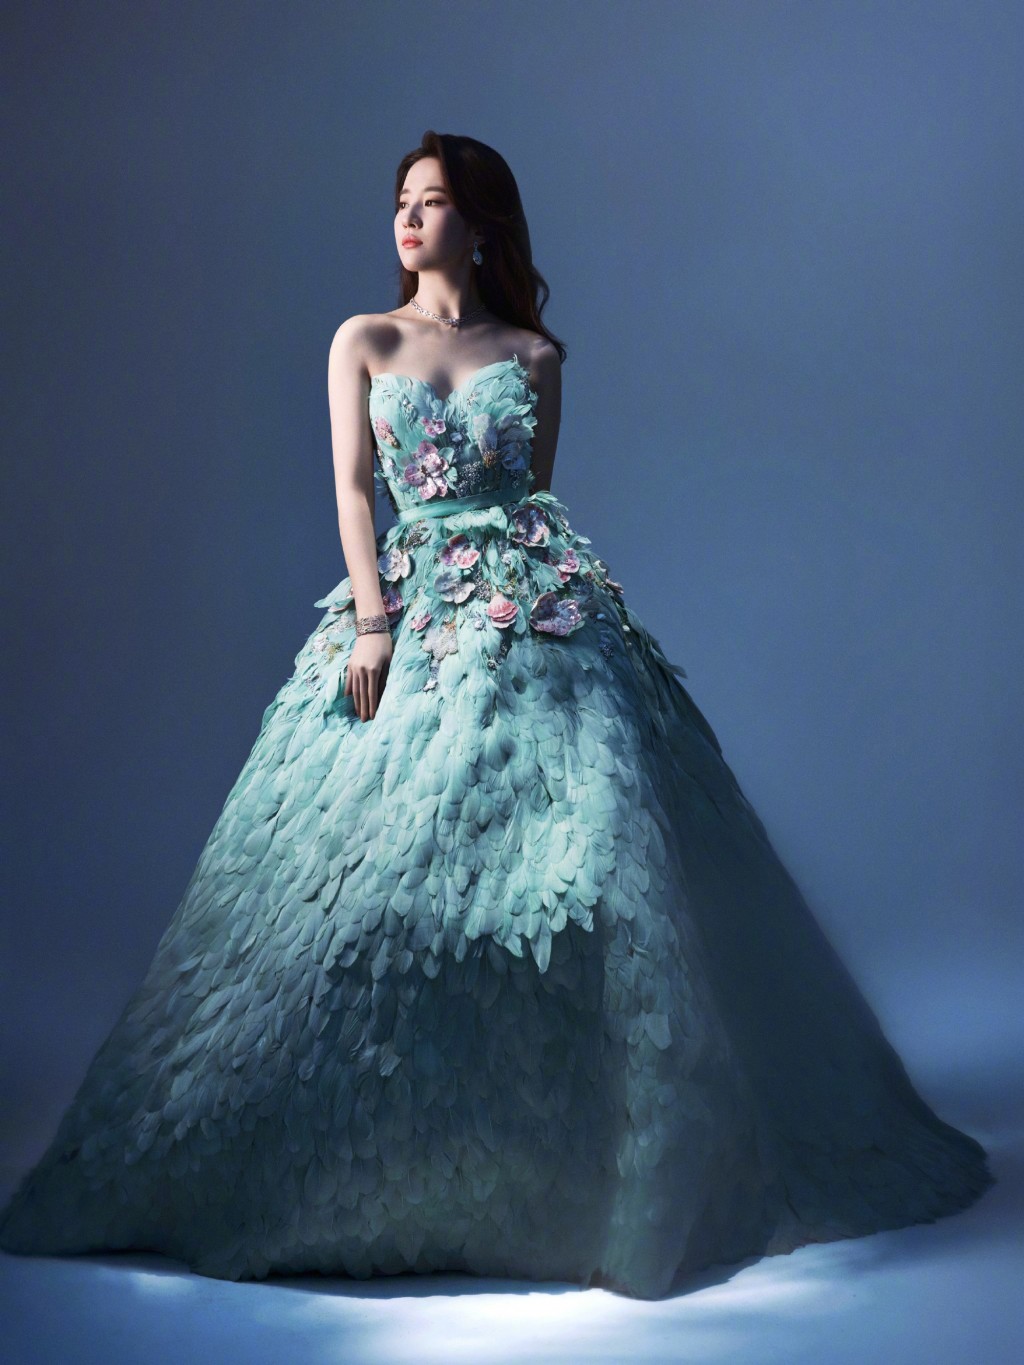 刘亦菲孔雀公主造型仙女气质写真图片